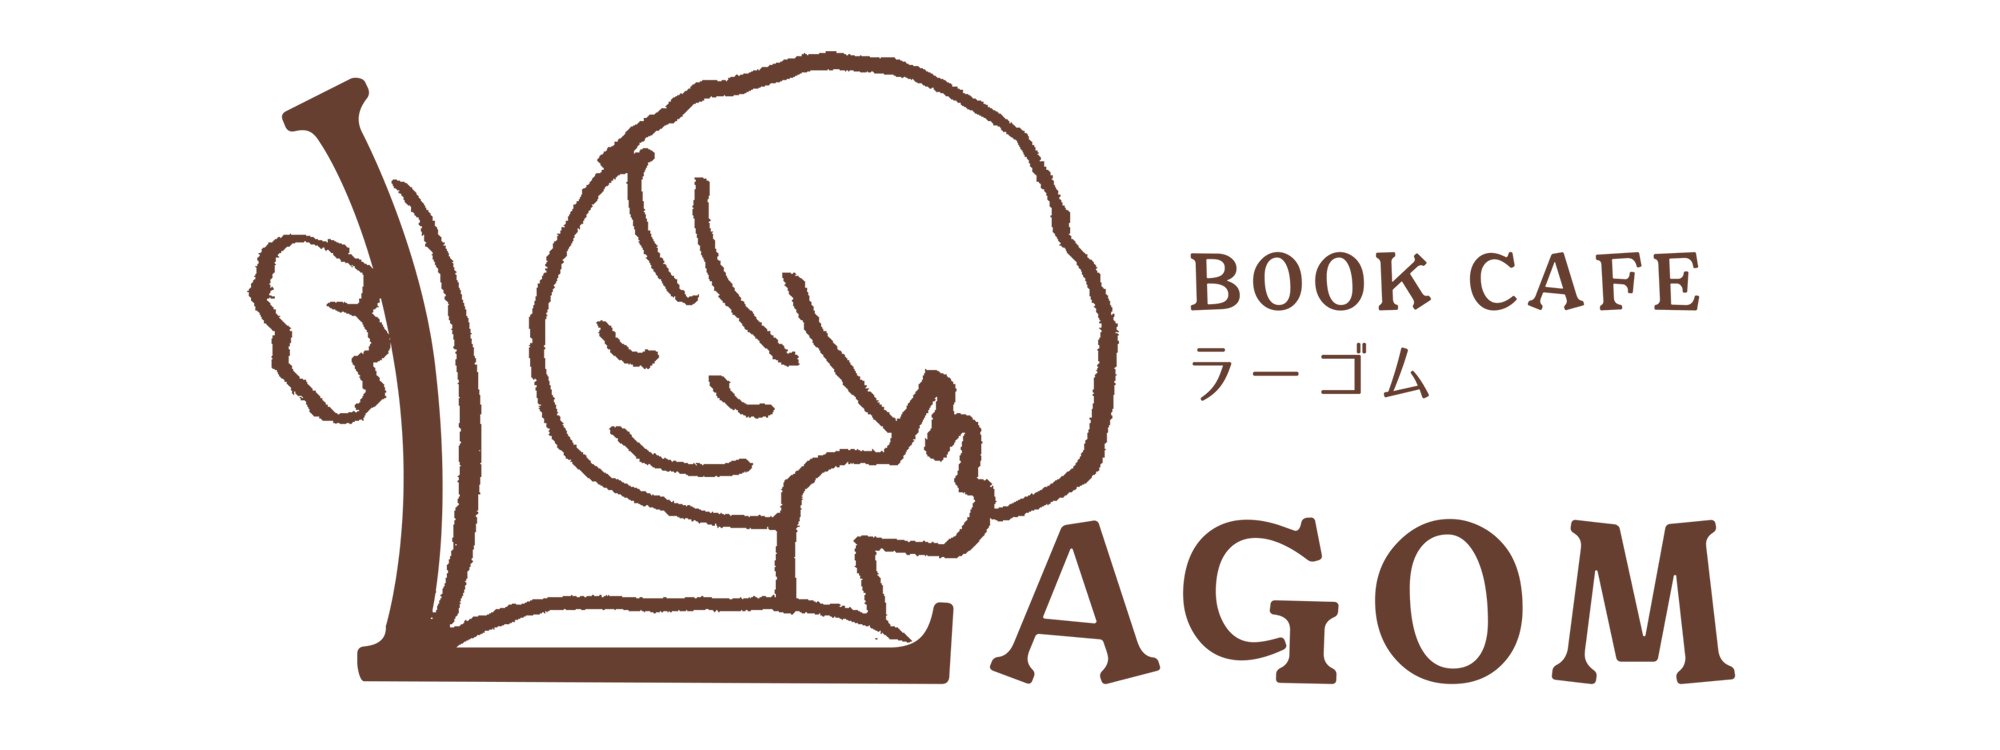 BOOK CAFE LAGOM｜ブックカフェラーゴム